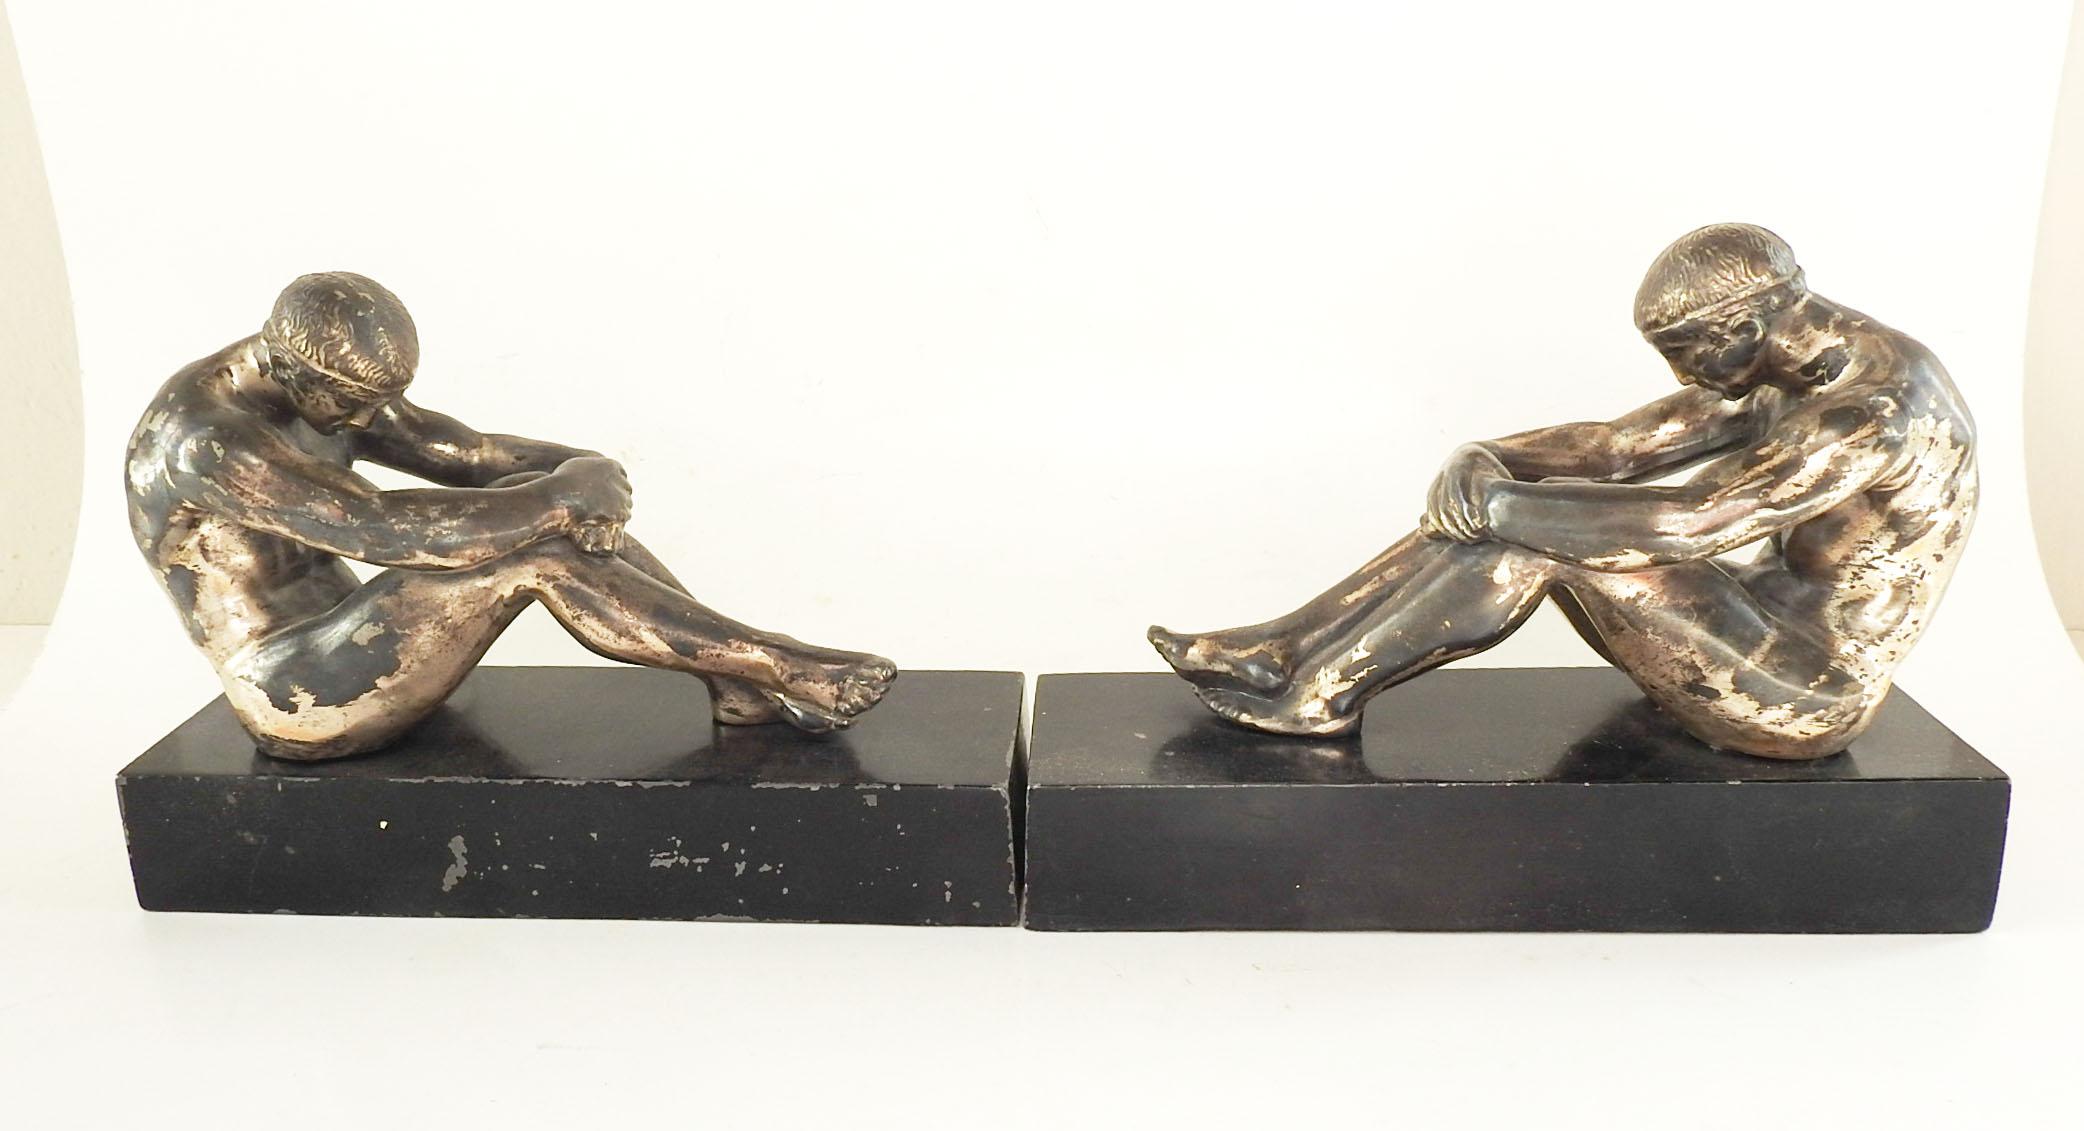 Ein Paar Vintage-Buchstützen aus Metall von Ronson Art aus den 1920er Jahren. Griechische Athleten auf schwarzem Sockel mit silberner Patina auf den Figuren. Filzböden mit originalem Aufkleber, Abnutzungserscheinungen am Boden.